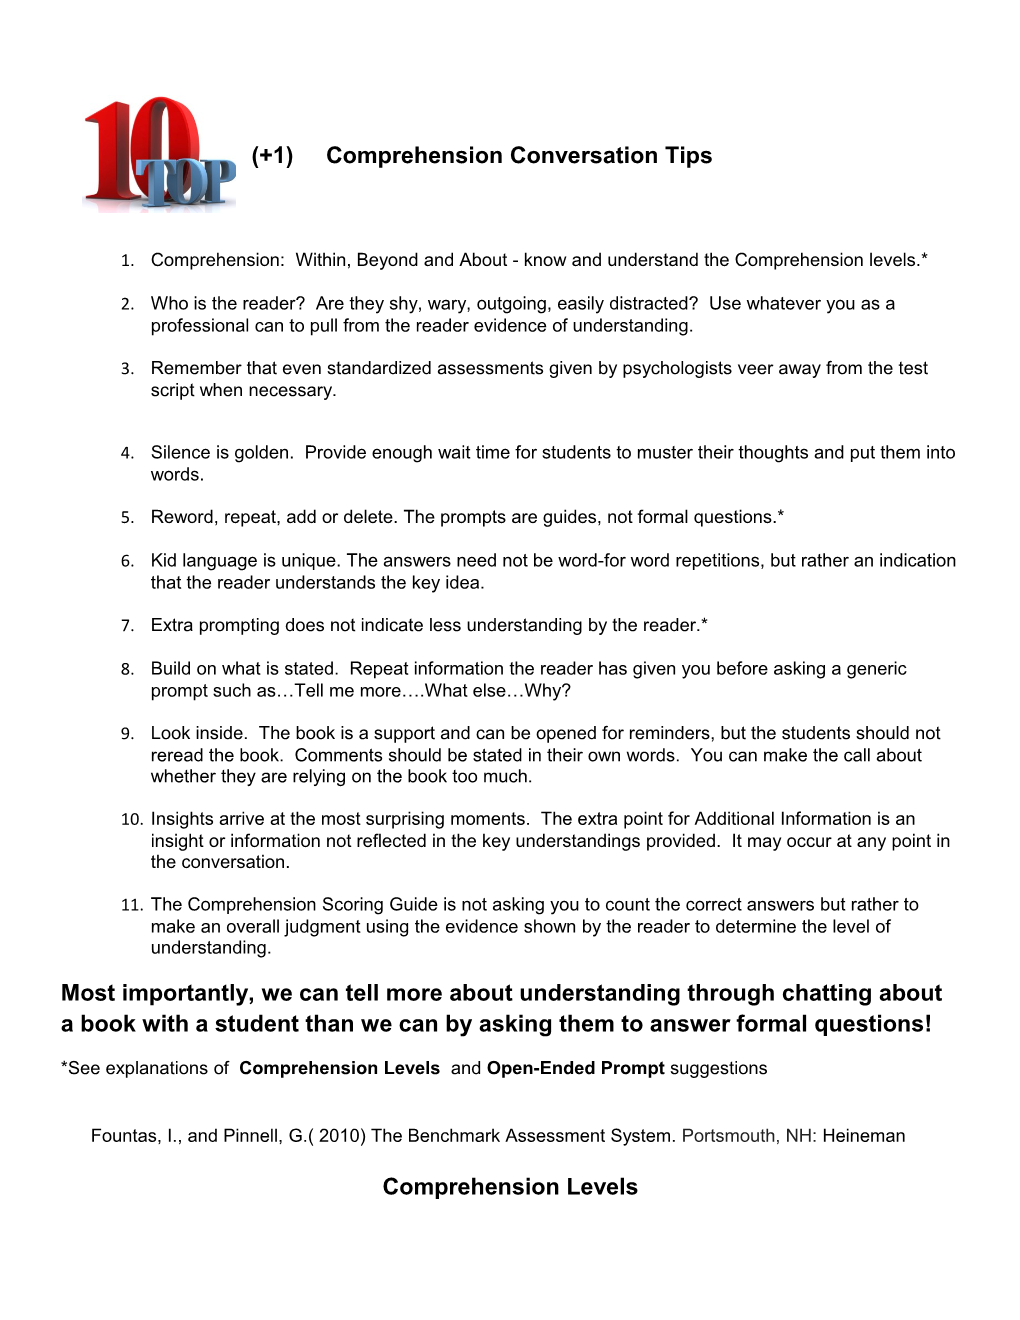 (+1) Comprehension Conversation Tips